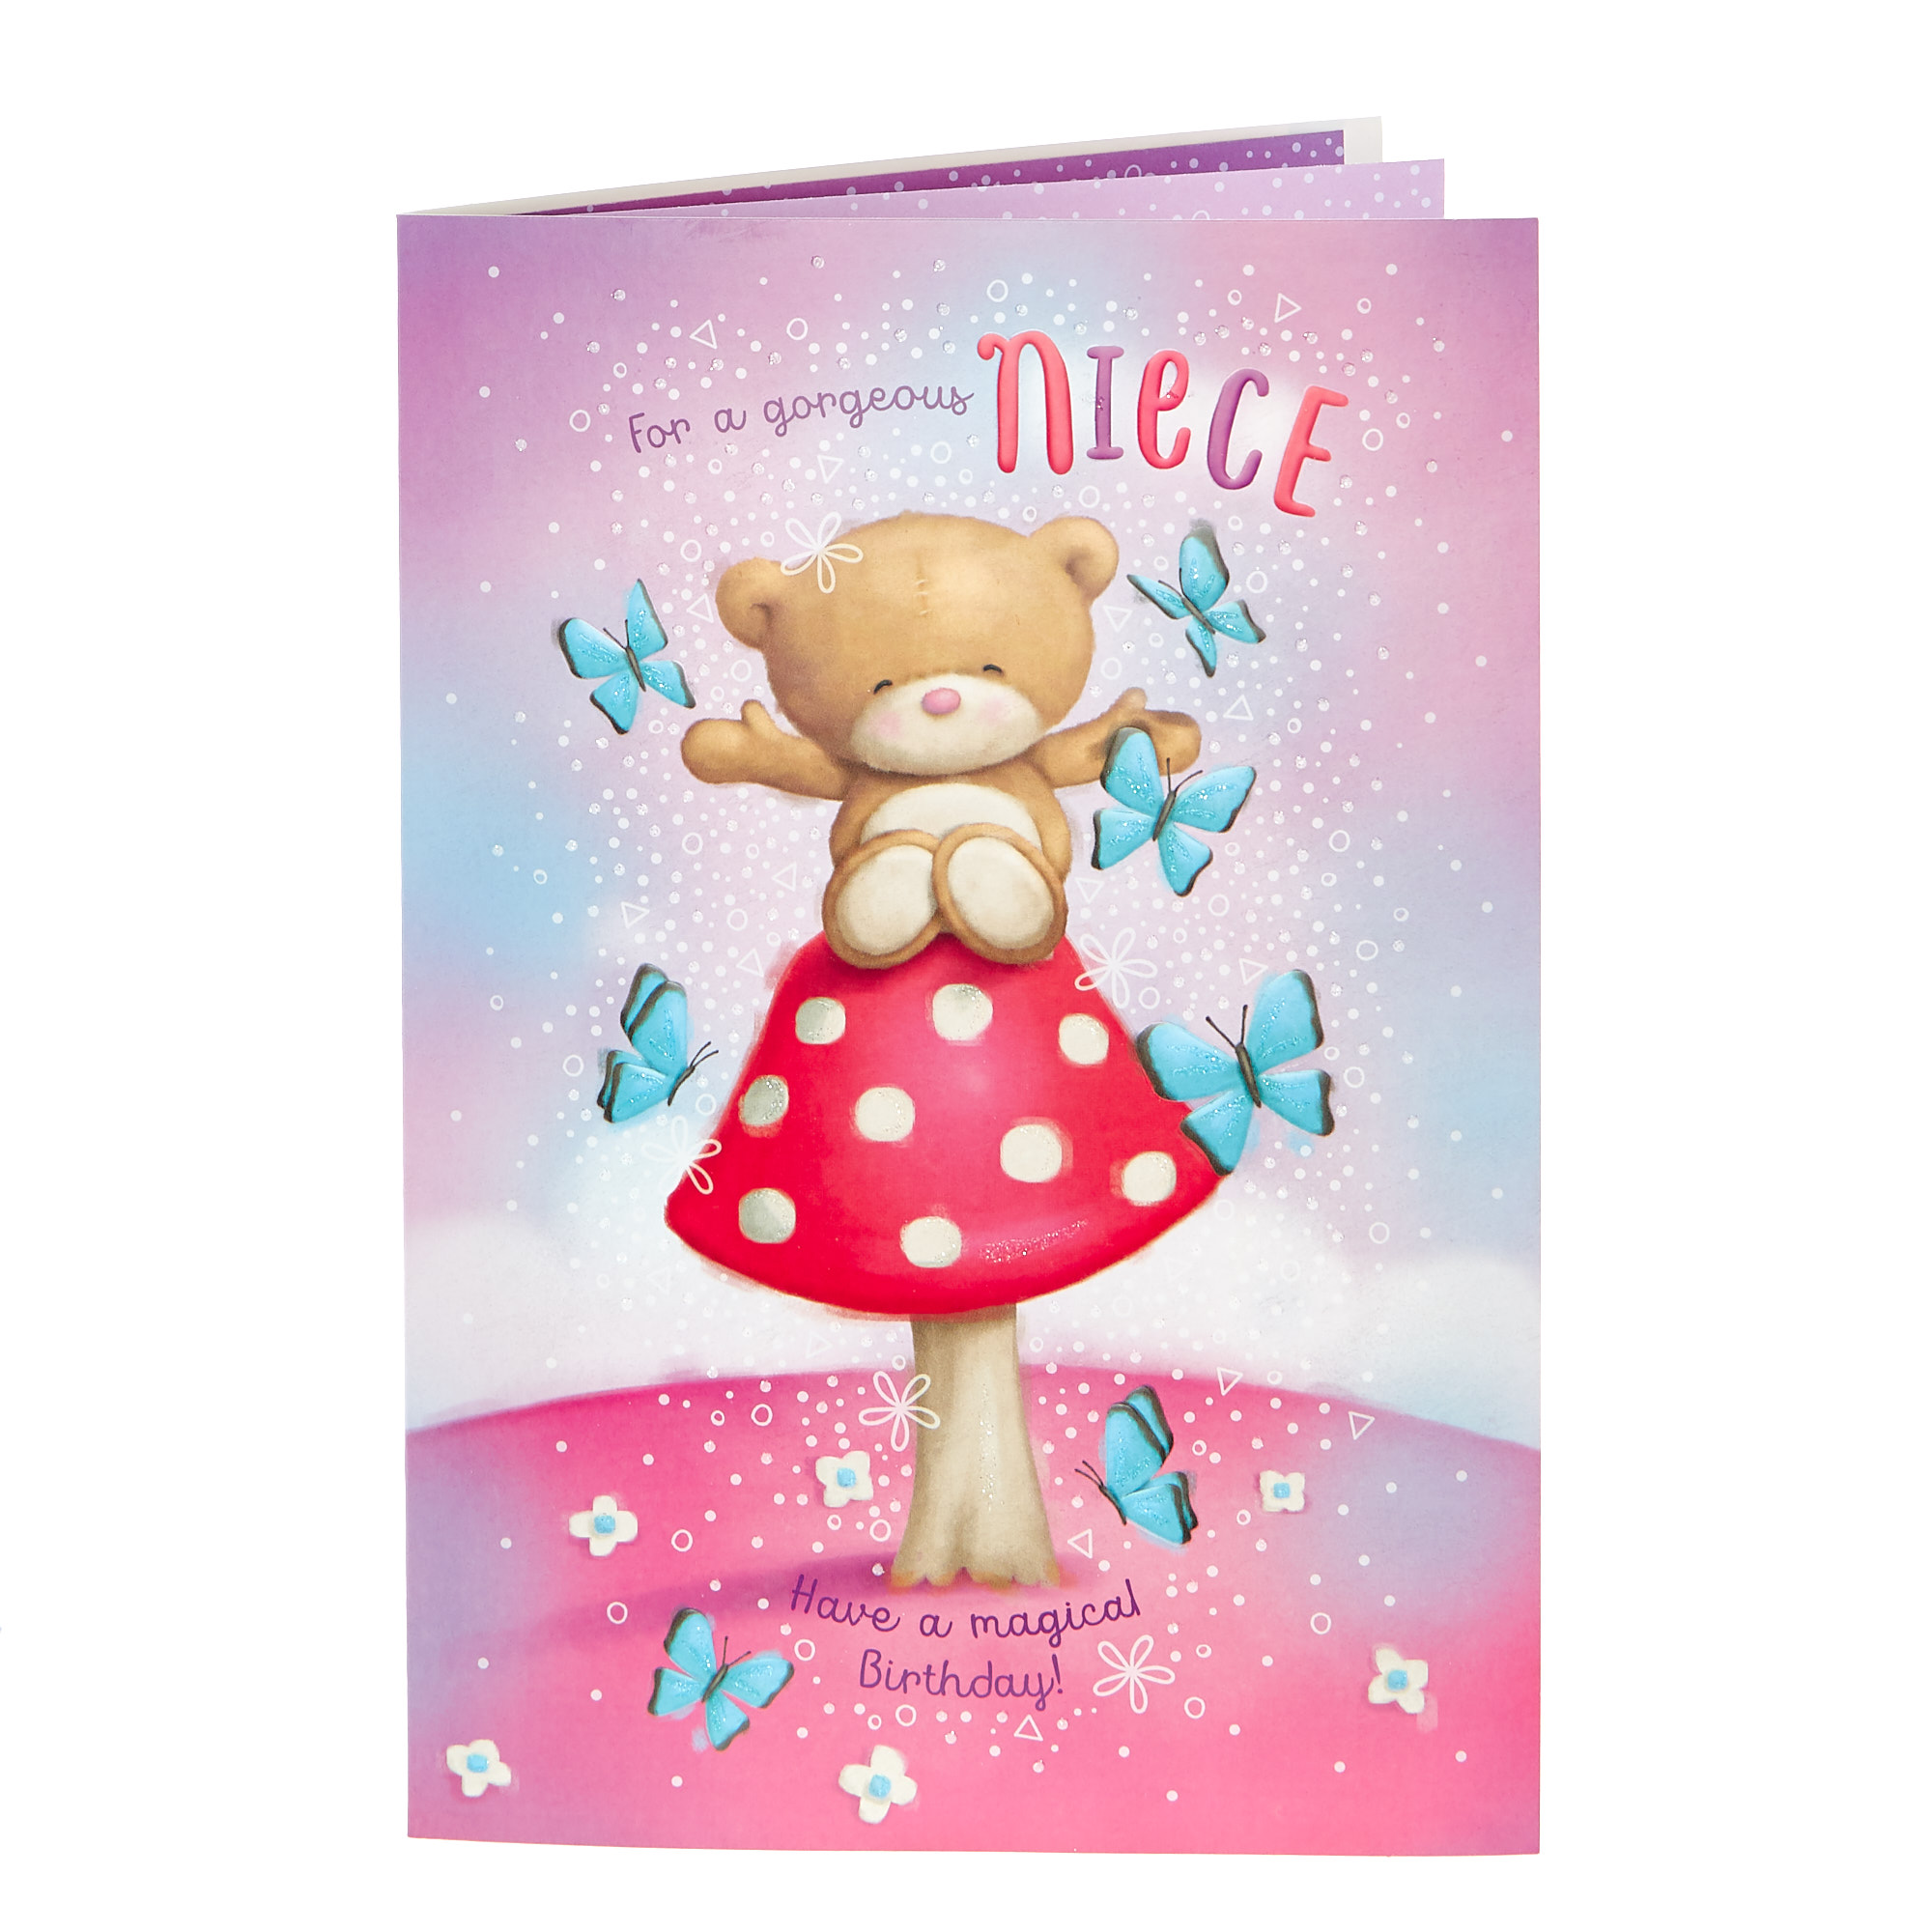 Hugs Bear Birthday Card - Gorgeous Niece 